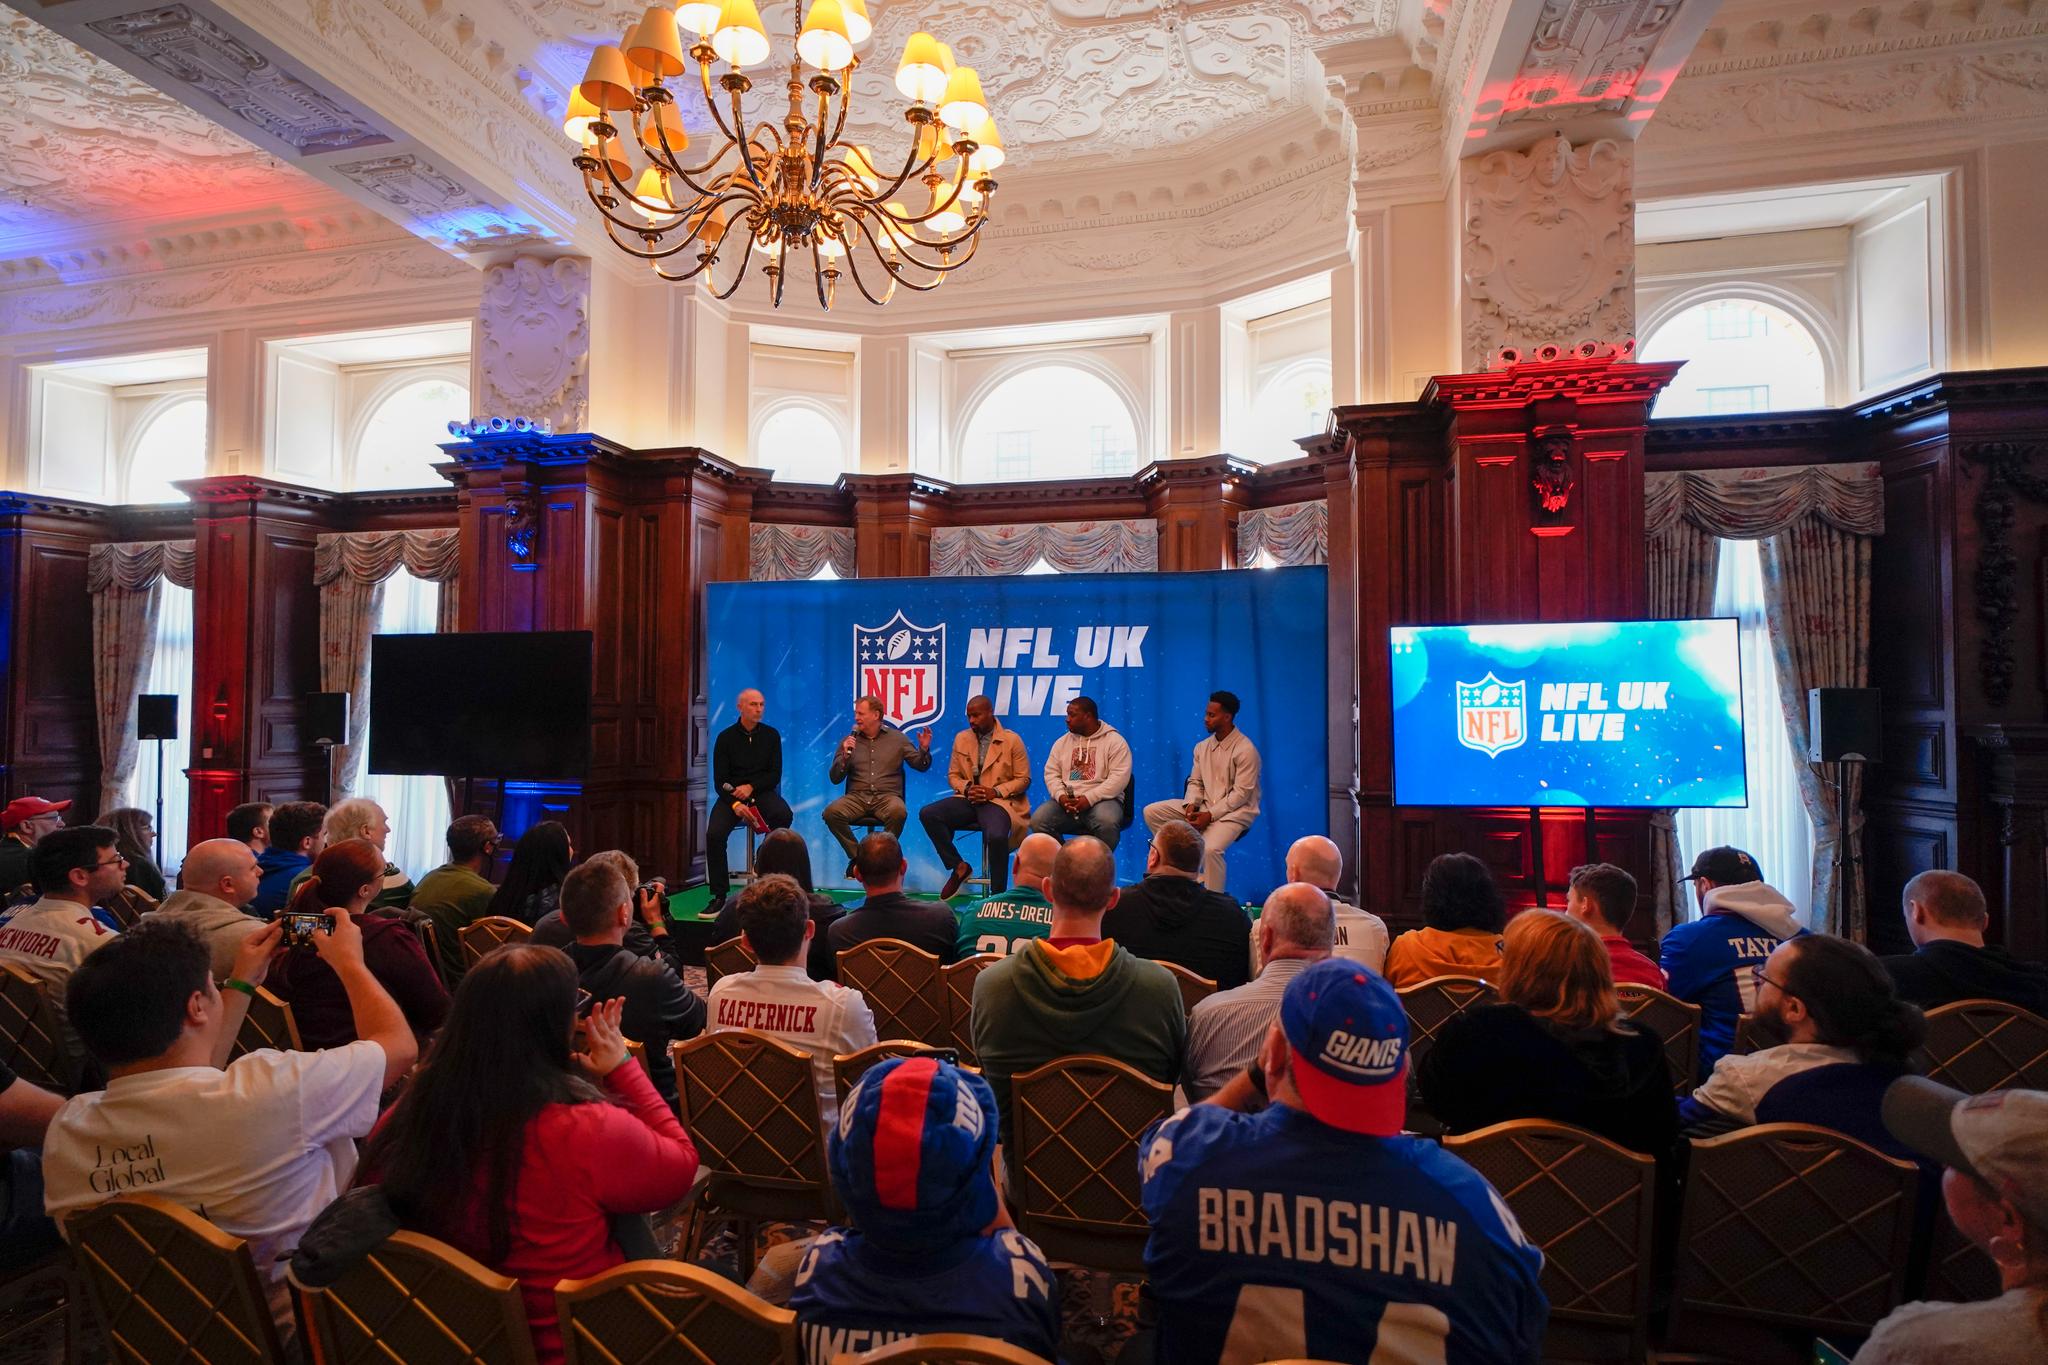 GA HÅP: NFL-sjef Roger Goodell snakket til mange oppmøtte britiske NFL-fans lørdag, og ga håp om mye mer amerikansk fotball i London fremover.